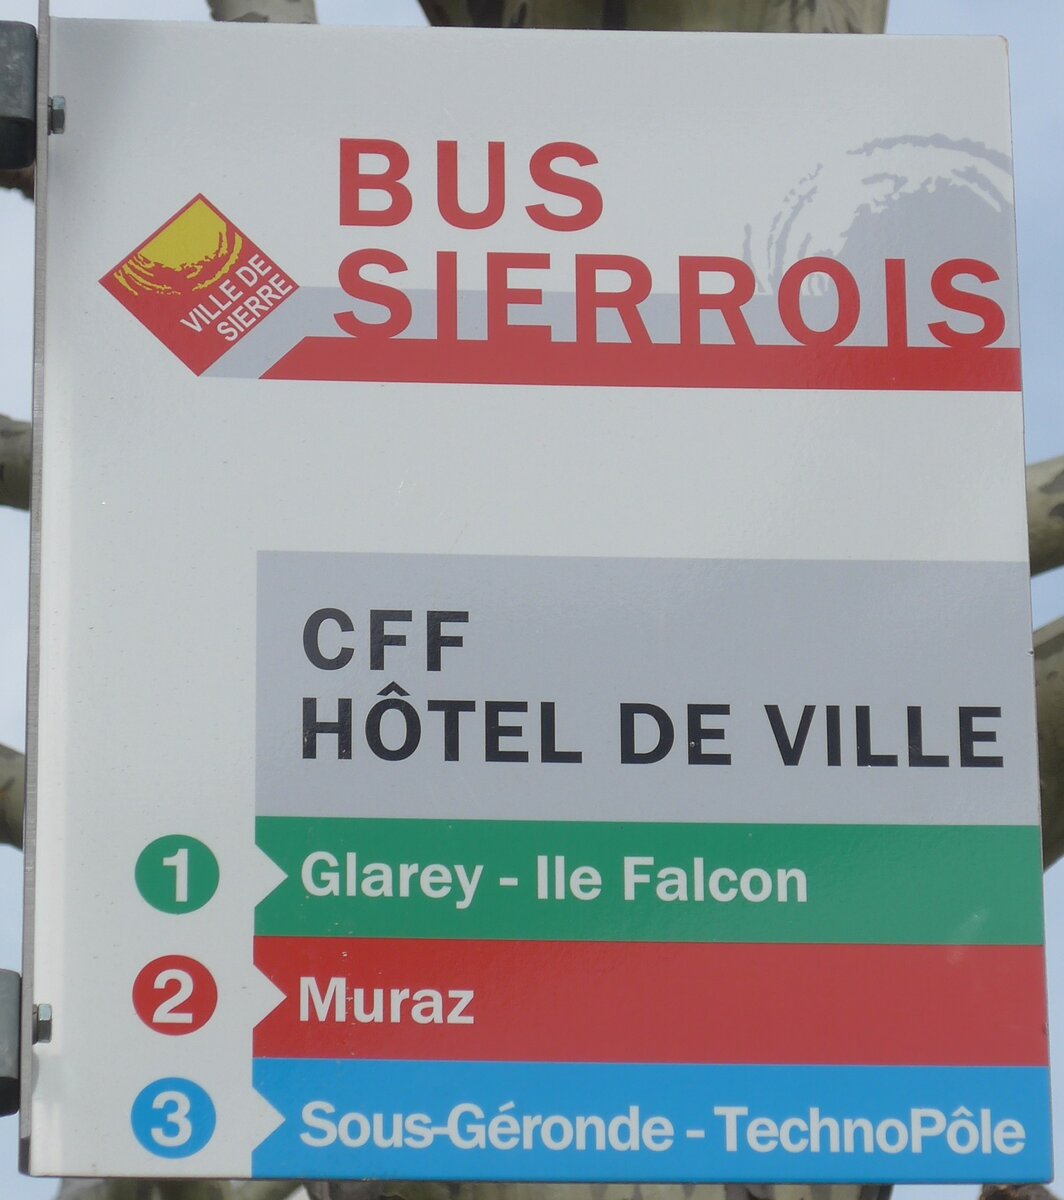 (189'722) - BUS SIERROIS-Haltestellenschild - Sierre, CFF Htel de Ville - am 30. Mrz 2018